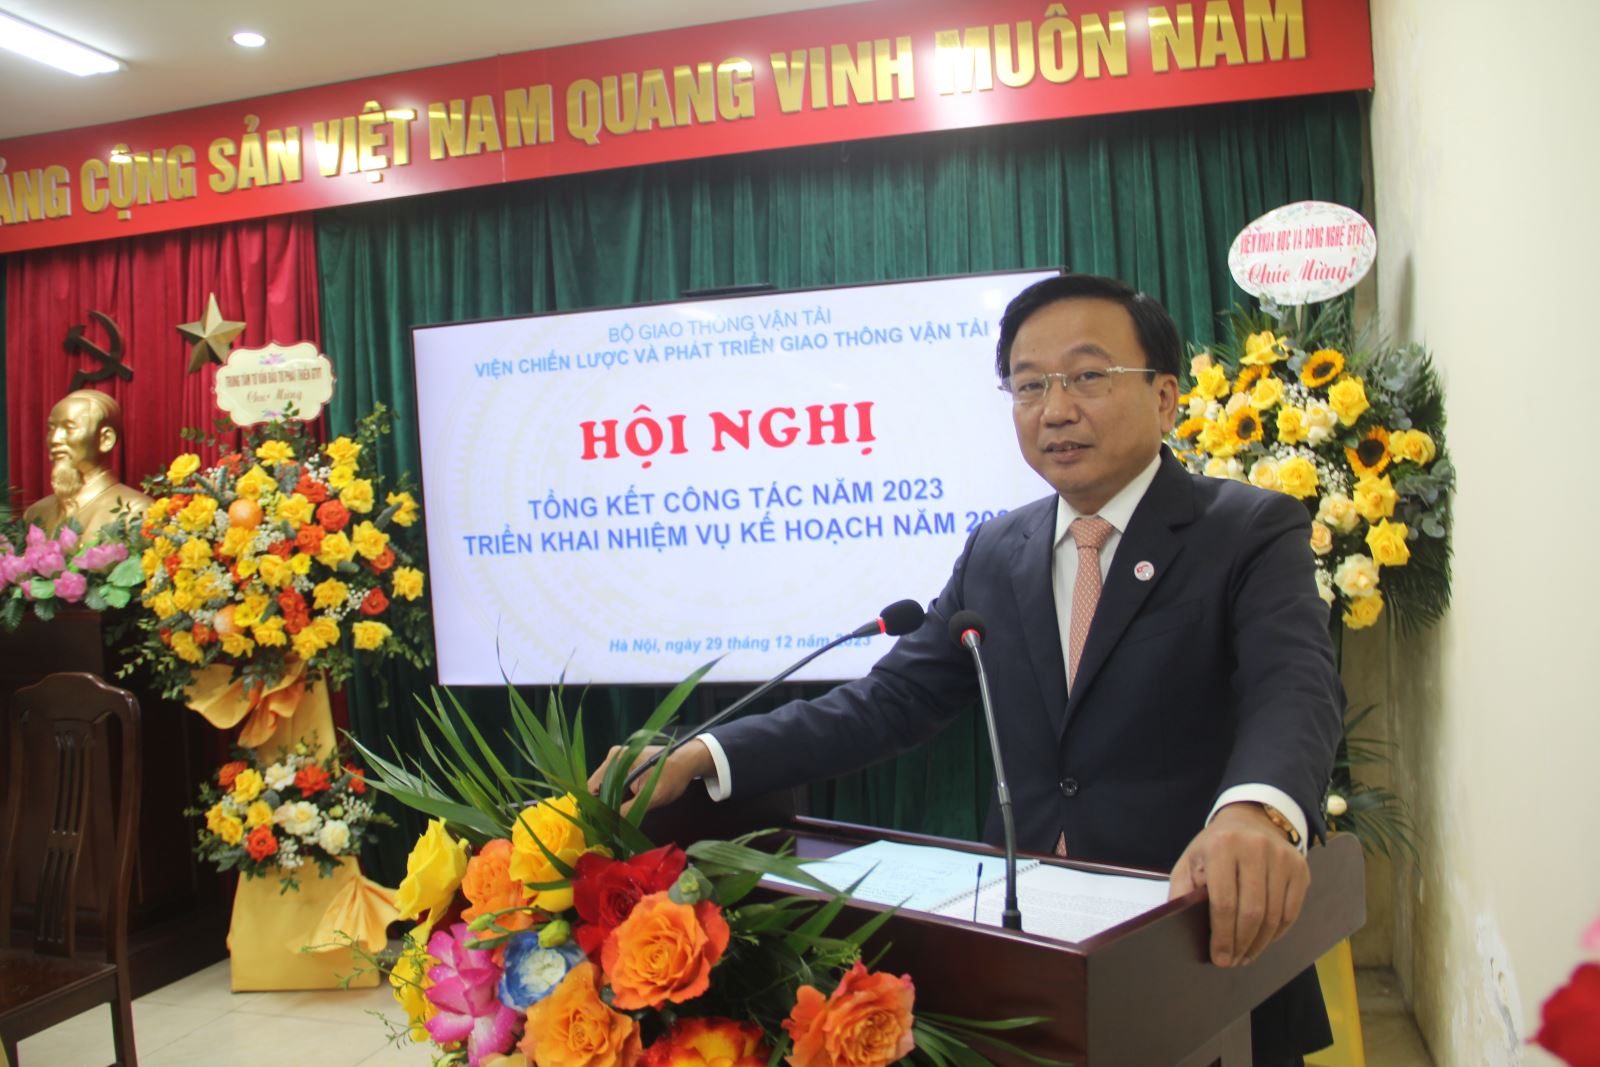 Thứ trưởng Nguyễn Danh Huy dự tổng kết công tác năm 2023 của Viện Chiến lược và Phát triển GTVT